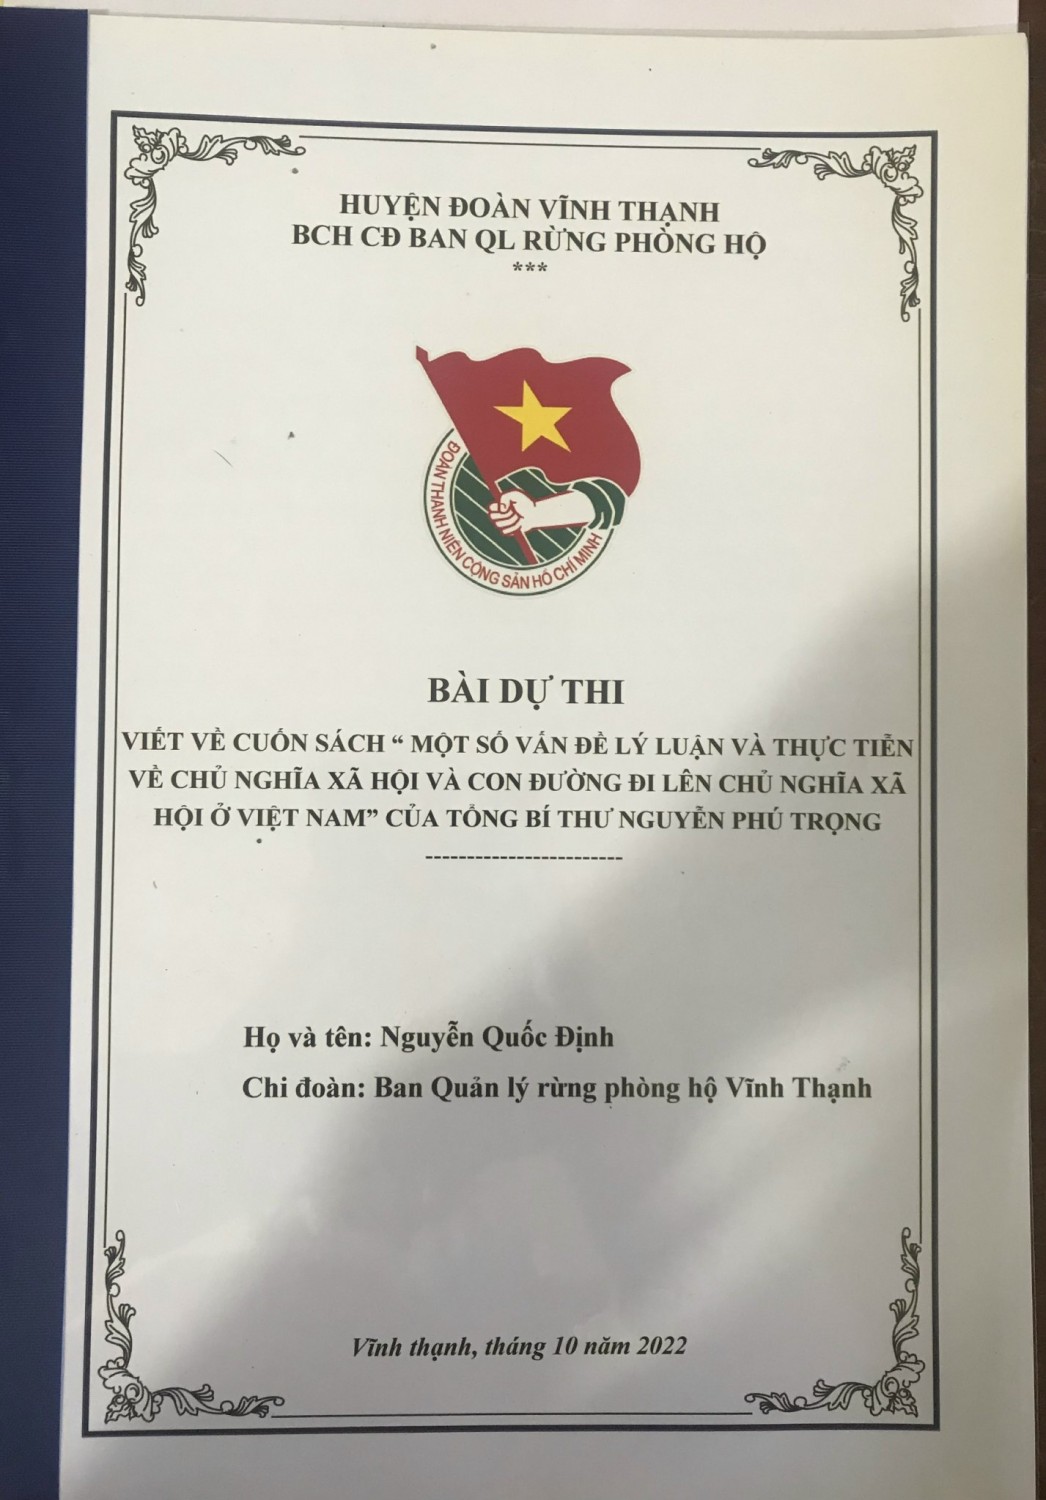 Cuộc thi viết về Cuốn sách “Một số vấn đề lý luận và thực tiễn về chủ nghĩa xã hội và con đường đi lên chủ nghĩa xã hội ở Việt Nam” của Tổng Bí thư Nguyễn Phú Trọng